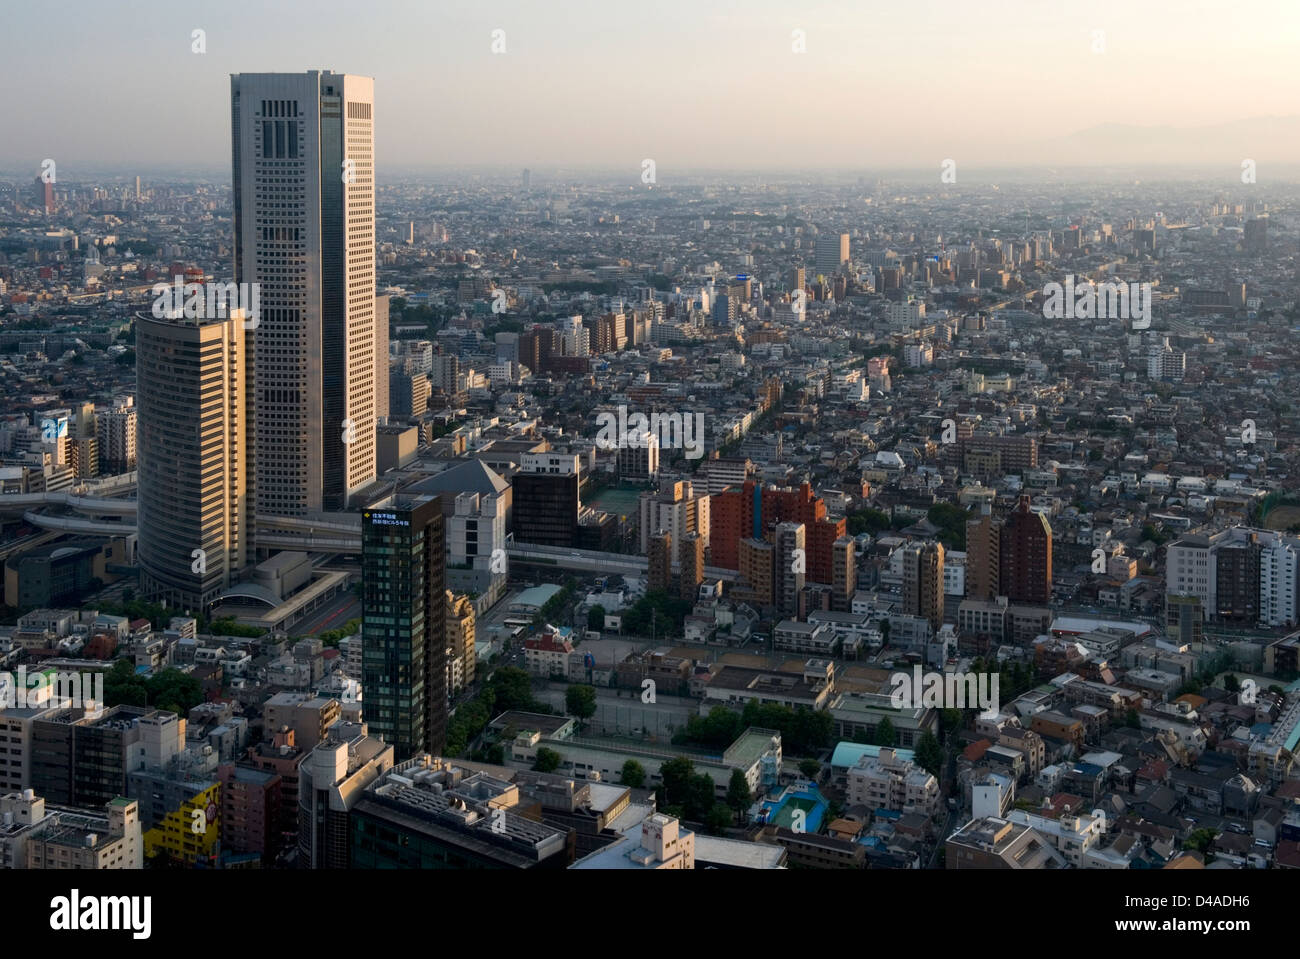 Luftaufnahme der Innenstadt von Tokio Skyline der Stadt mit Wolkenkratzer Hochhäuser und Zersiedelung so weit das Auge sehen kann. Stockfoto